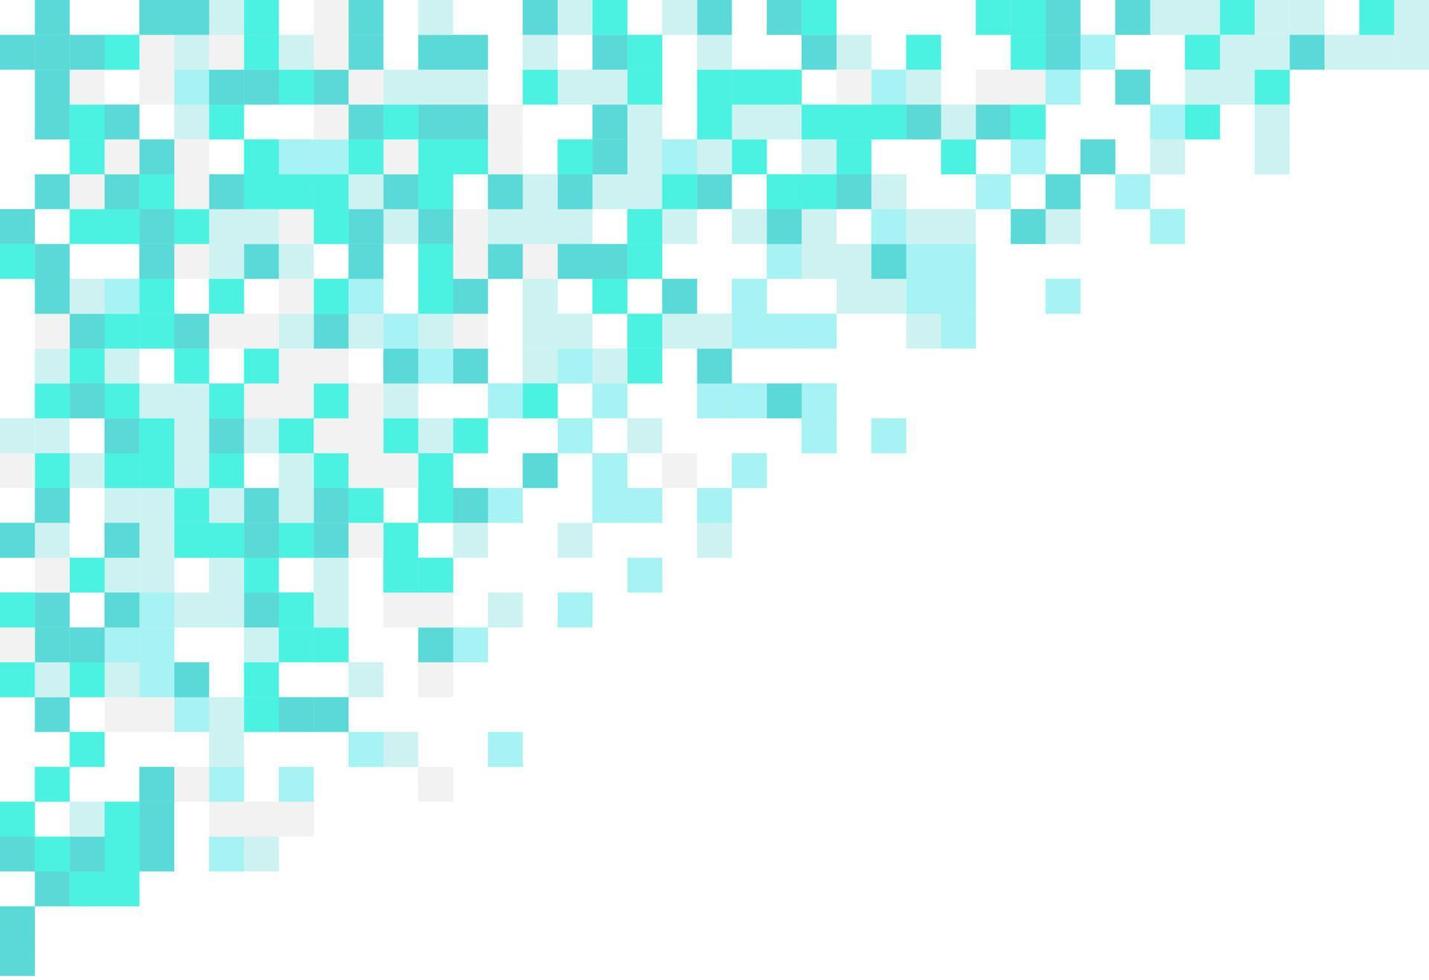 padrão abstrato de pixel de mosaico geométrico. fundo branco azul. desenho vetorial do seu modelo gráfico de banner de cartaz de panfleto vetor